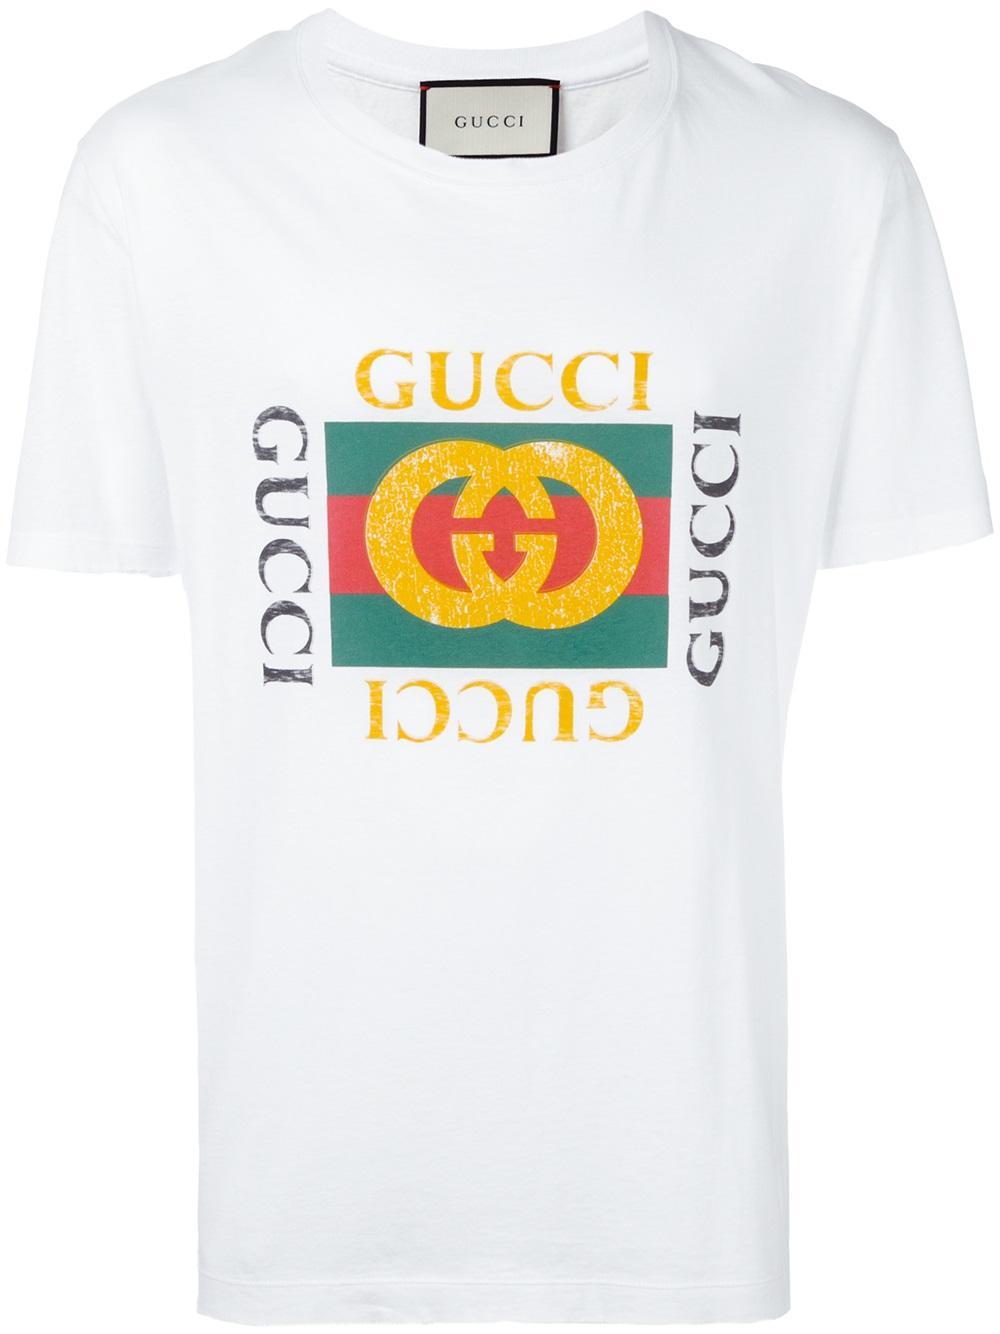 Gucci T Shirt - T-Shirt von GUCCI bei Breuninger kaufen - Shop online ...